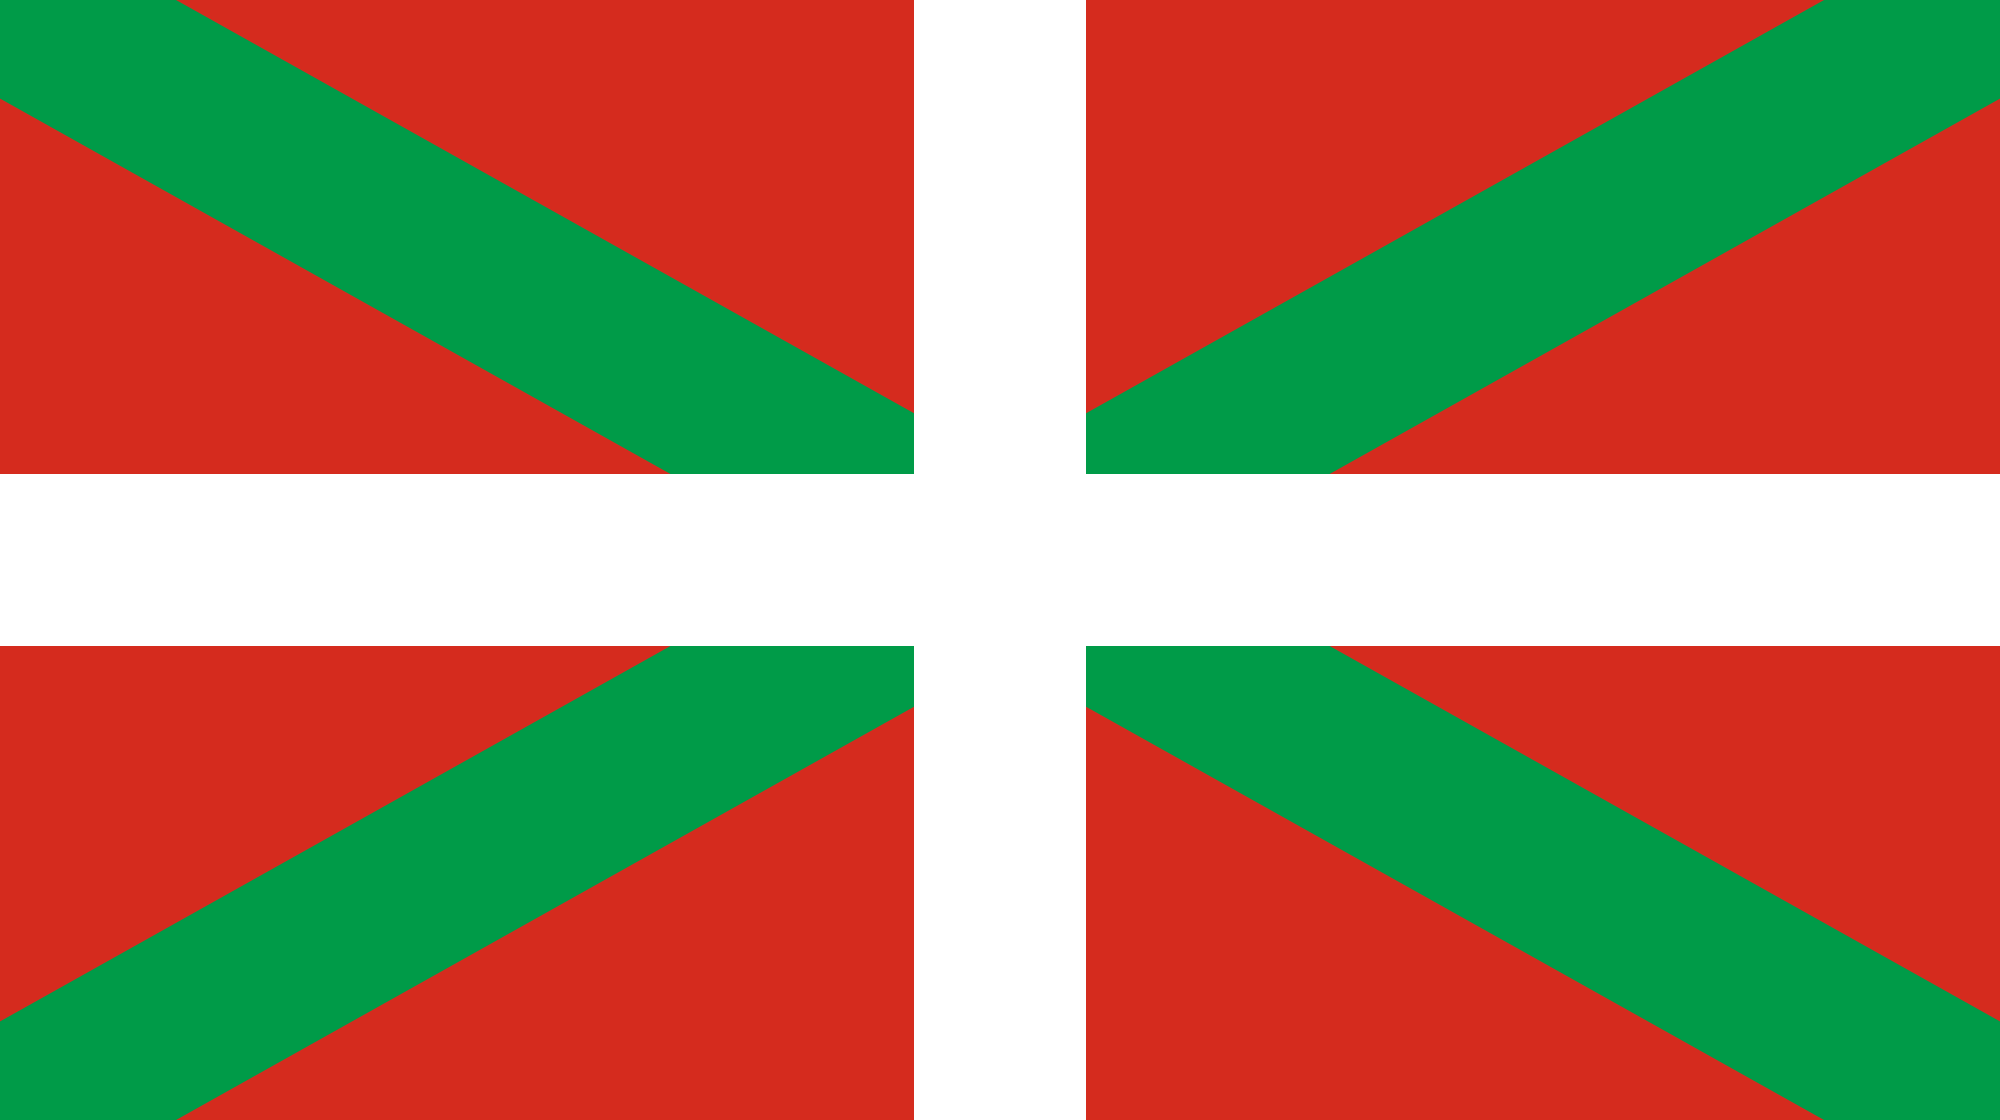 Red and White Cross Logo - Ikurriña